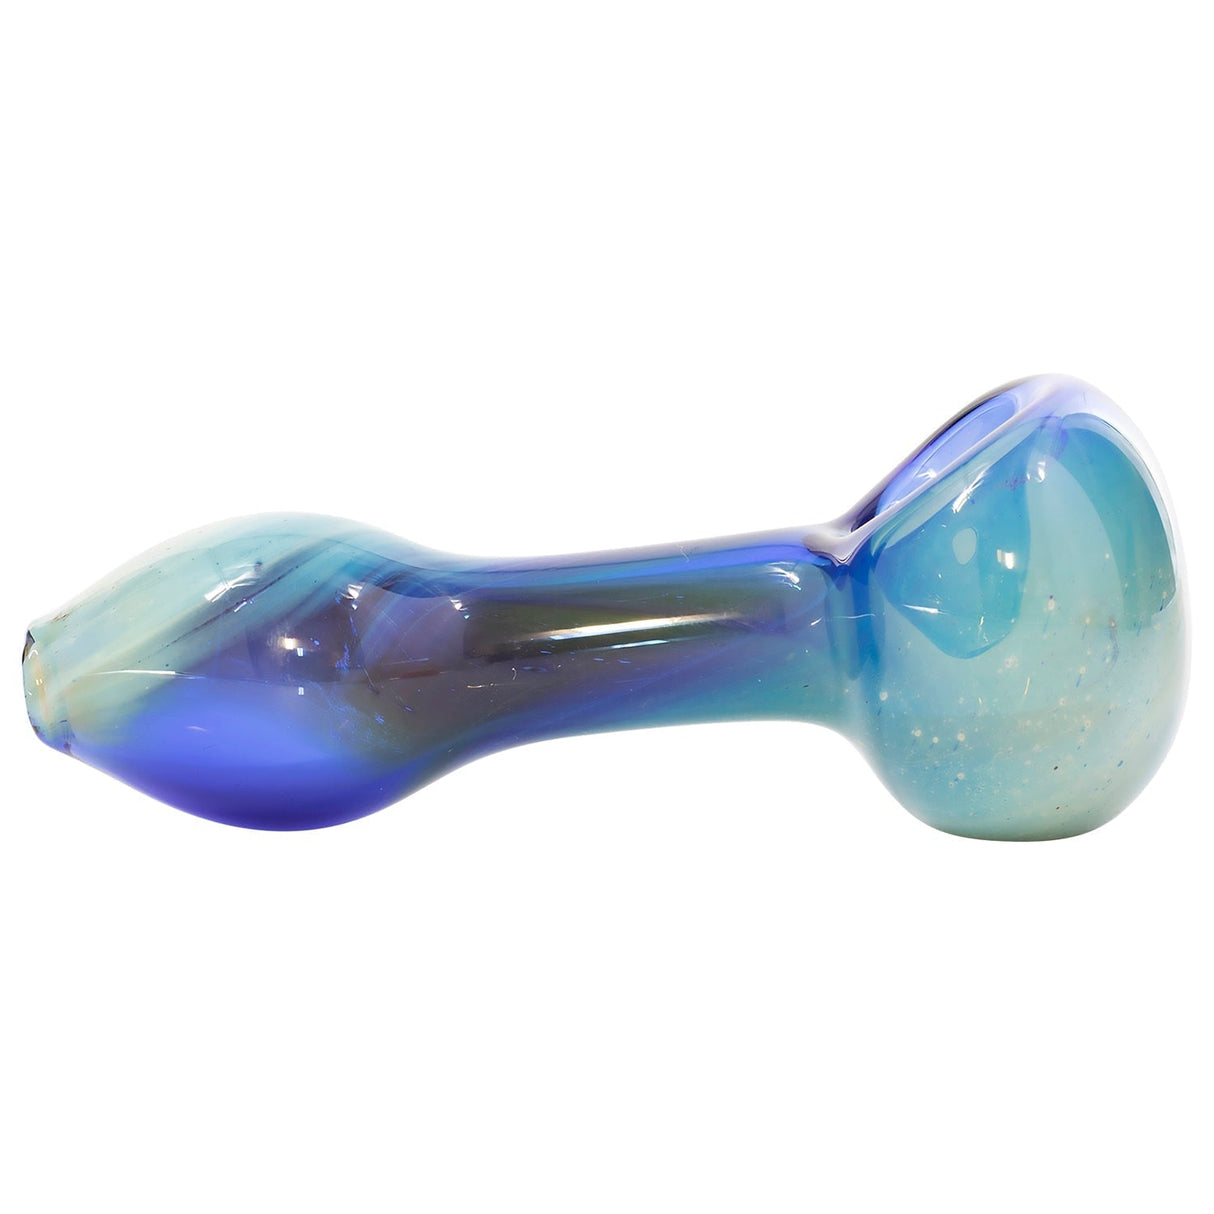 LA Pipes Nebula Spoon Hand Pipe - Durable Borosilicate Glass, Portable Design, Side View